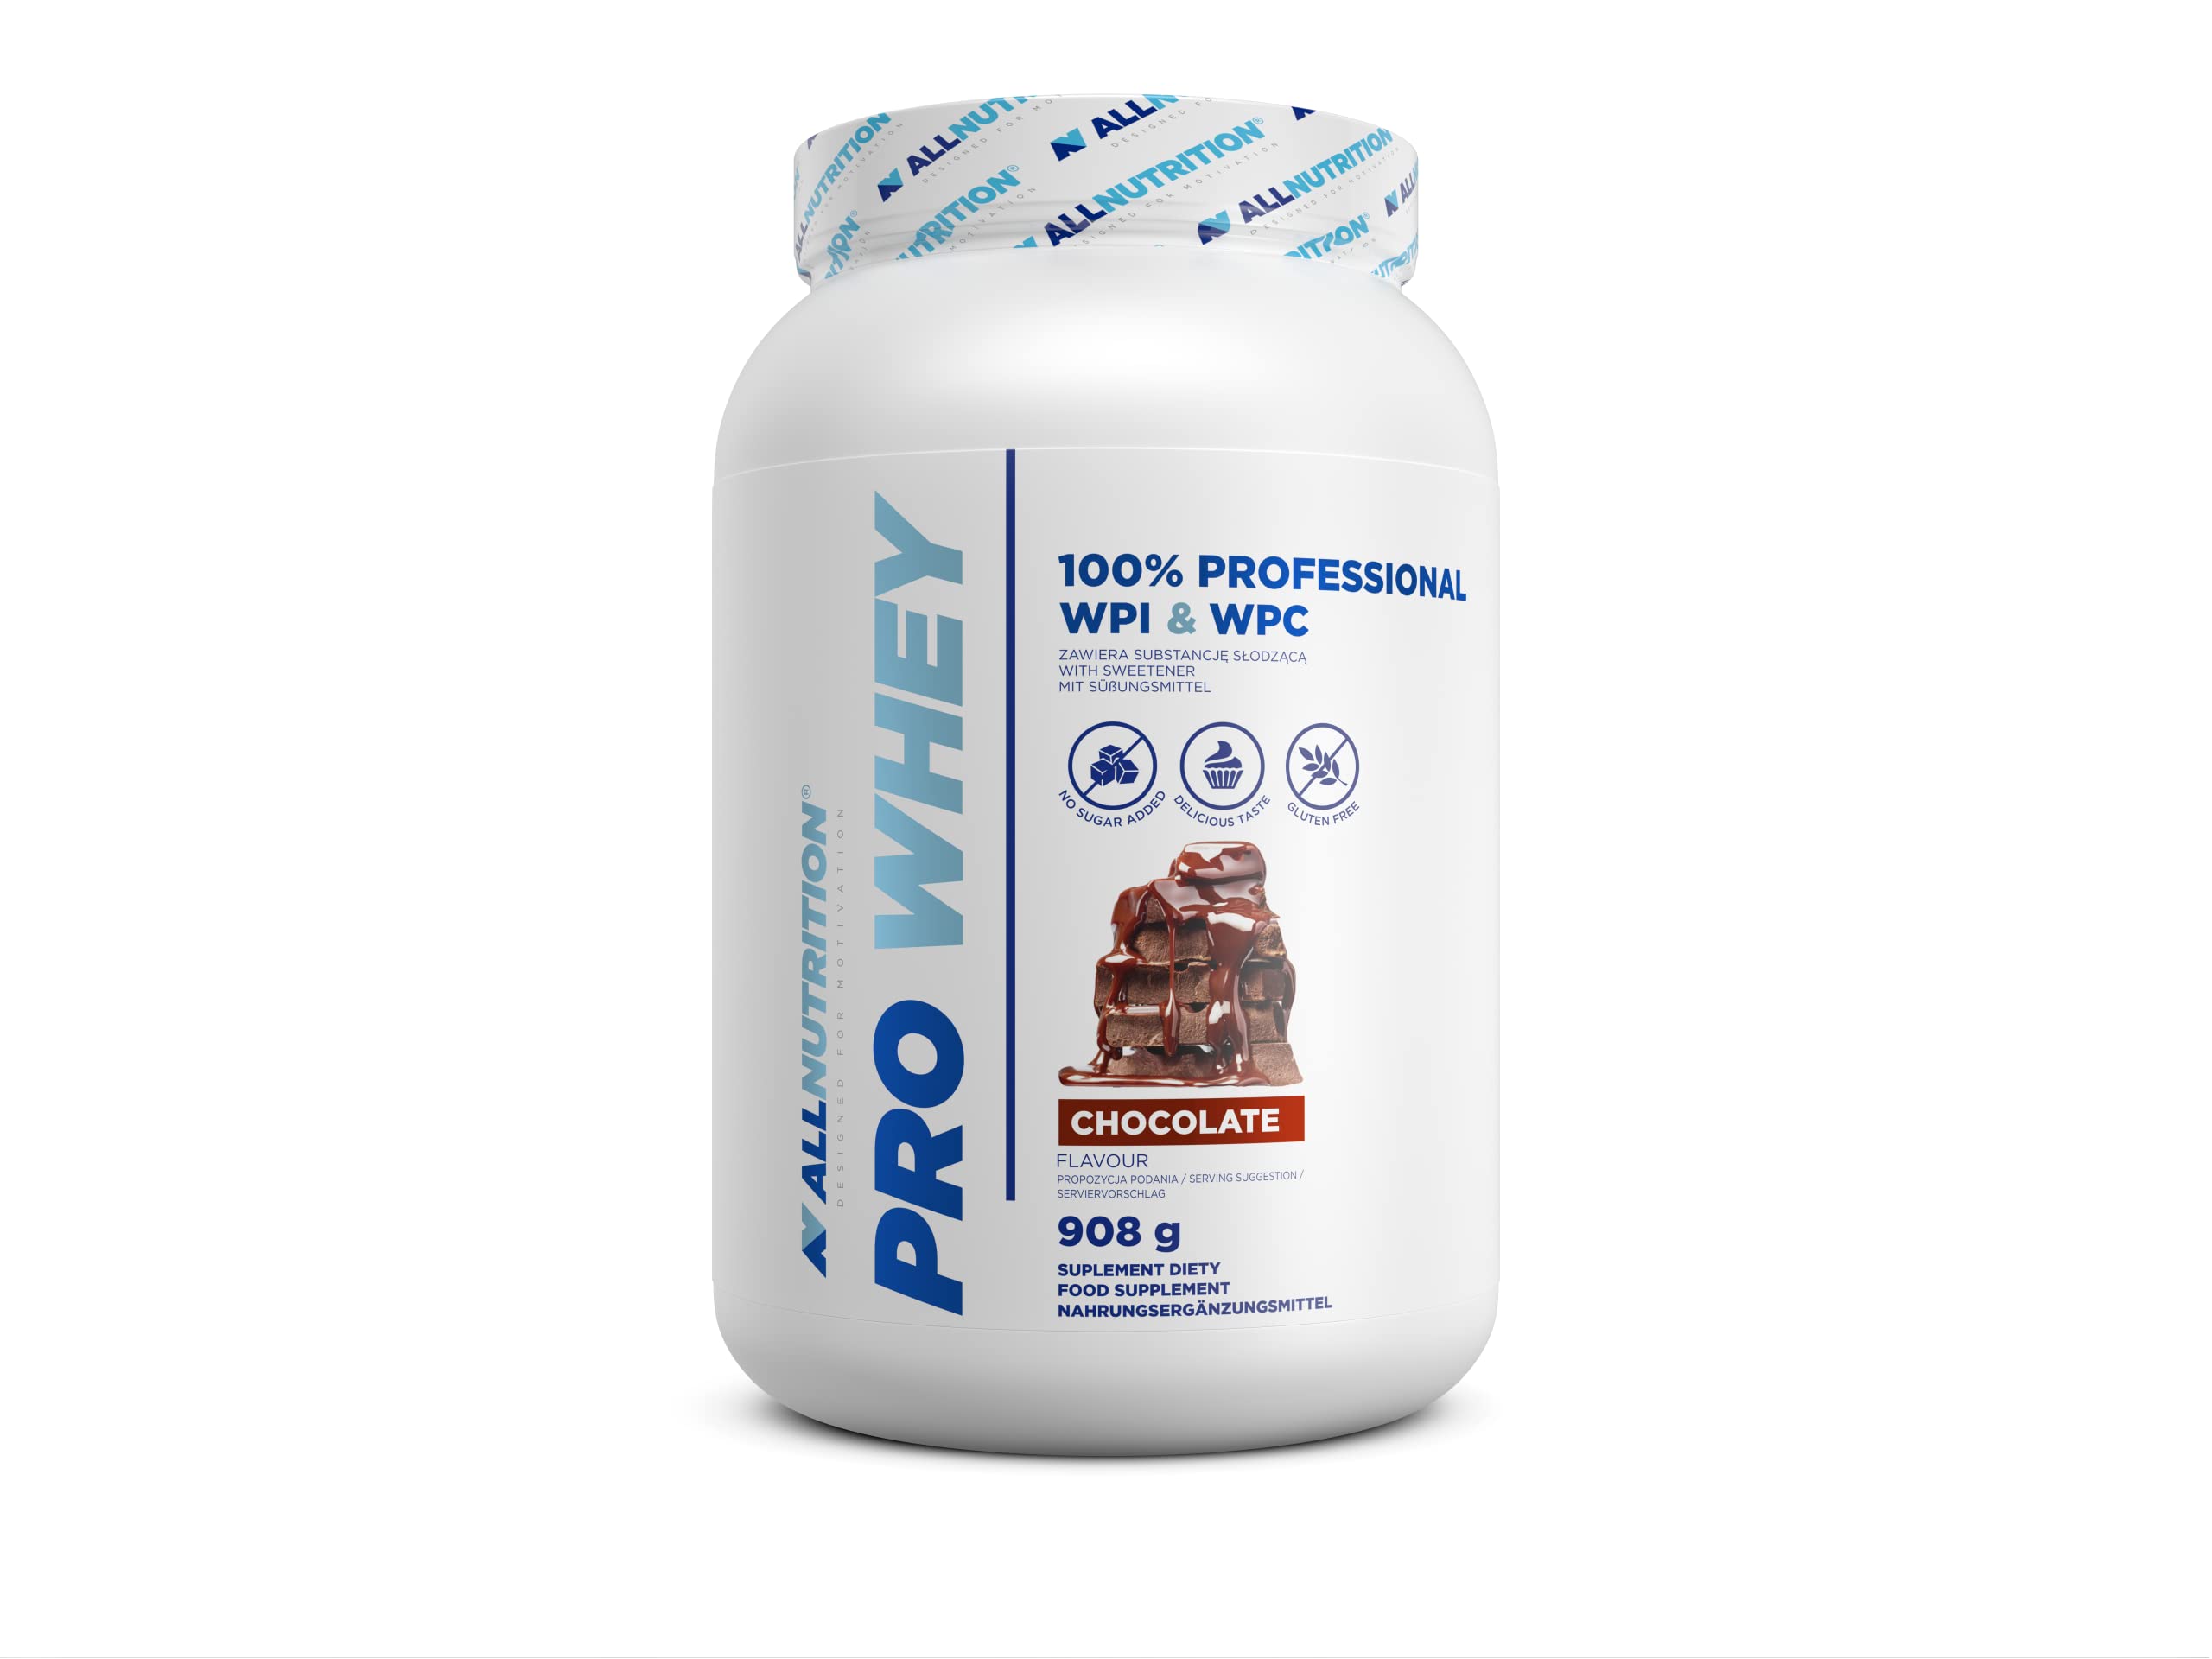 ALLNUTRITION Pro Whey Protein Powder mit Verzweigten Aminosäuren - Molkenprotein-Konzentrat & Molkenprotein-Isolat - Pre-Workout-Pulver - Kalorienarmes Proteinpulver - 908g - Schokolade